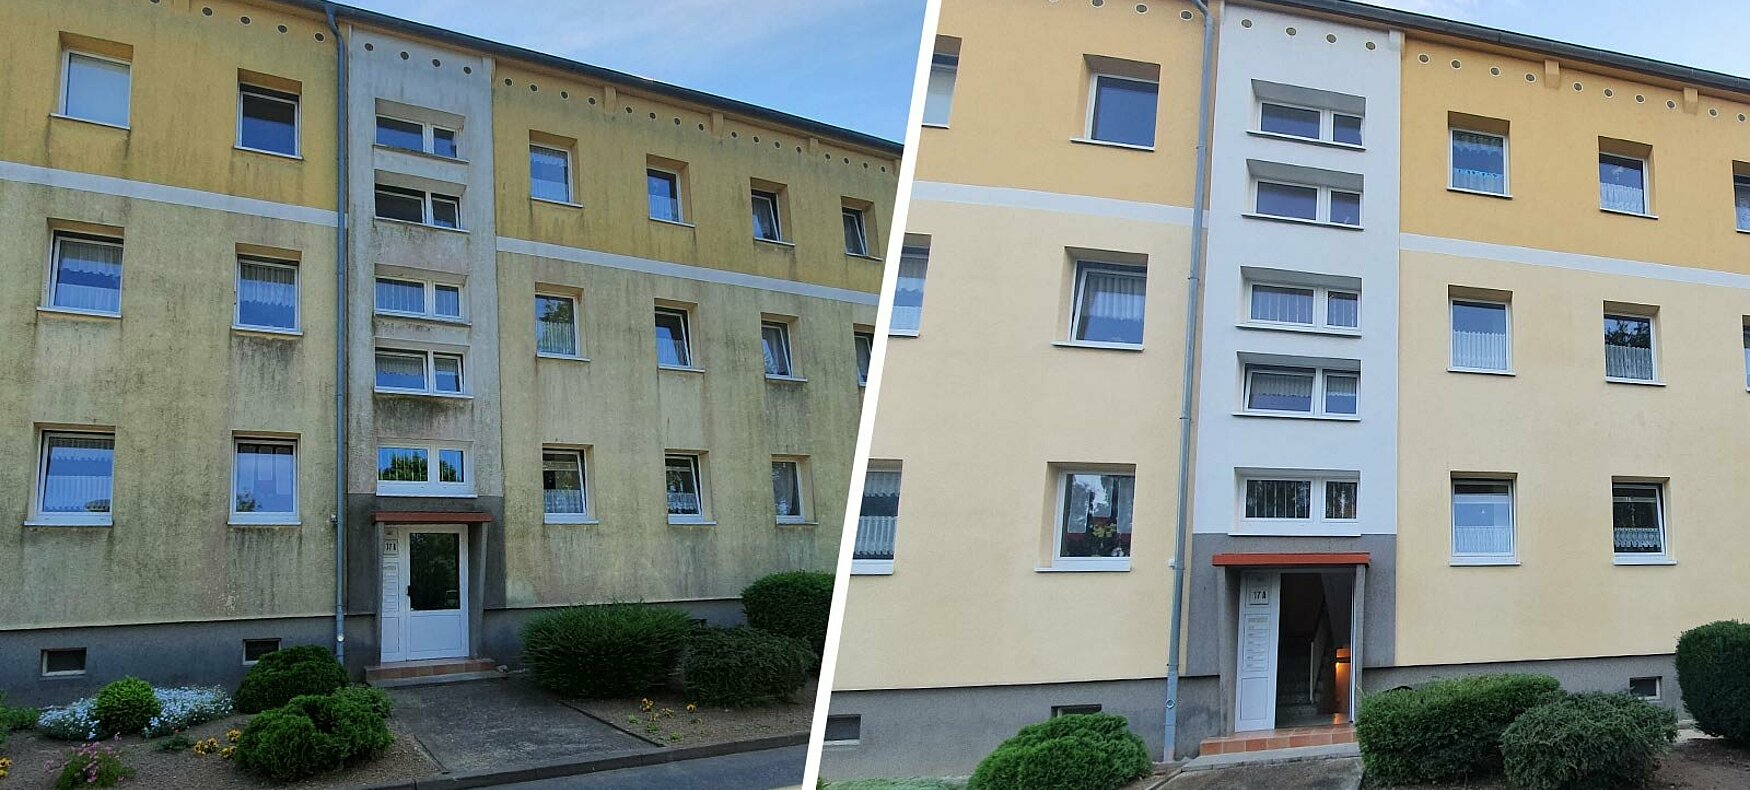 Fassadenreinigung Stralsund: Jetzt Angebot einholen und Hauswand reinigen lassen.